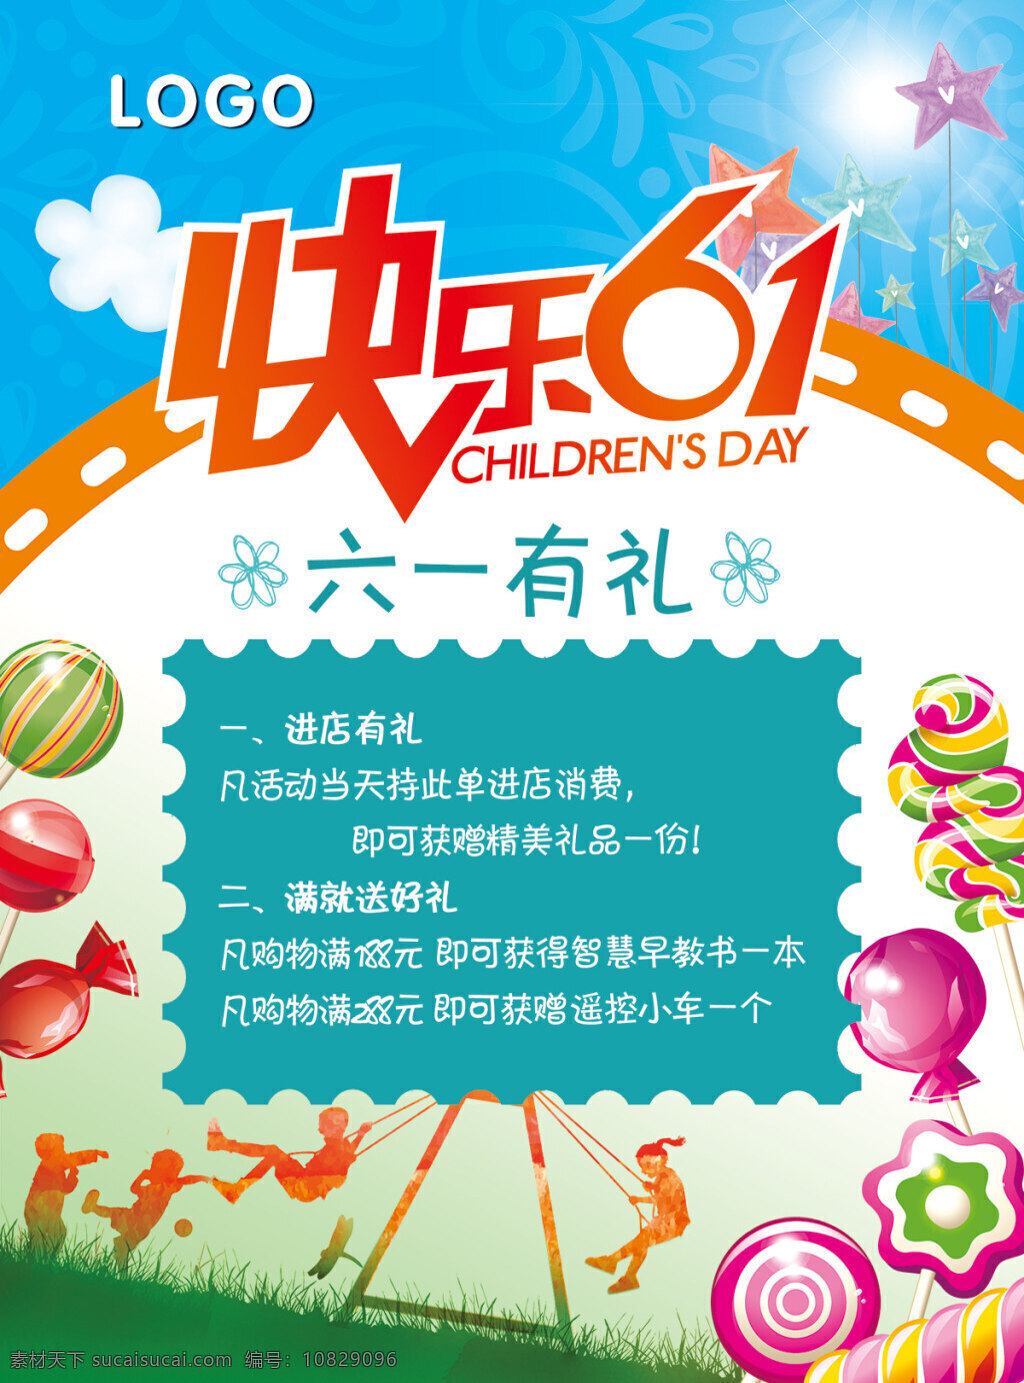 快乐 61 活动 海报 分层 儿童节海报 儿童节广告 儿童节活动 快乐61 六一有礼 棒棒糖 气球 玩耍 白色